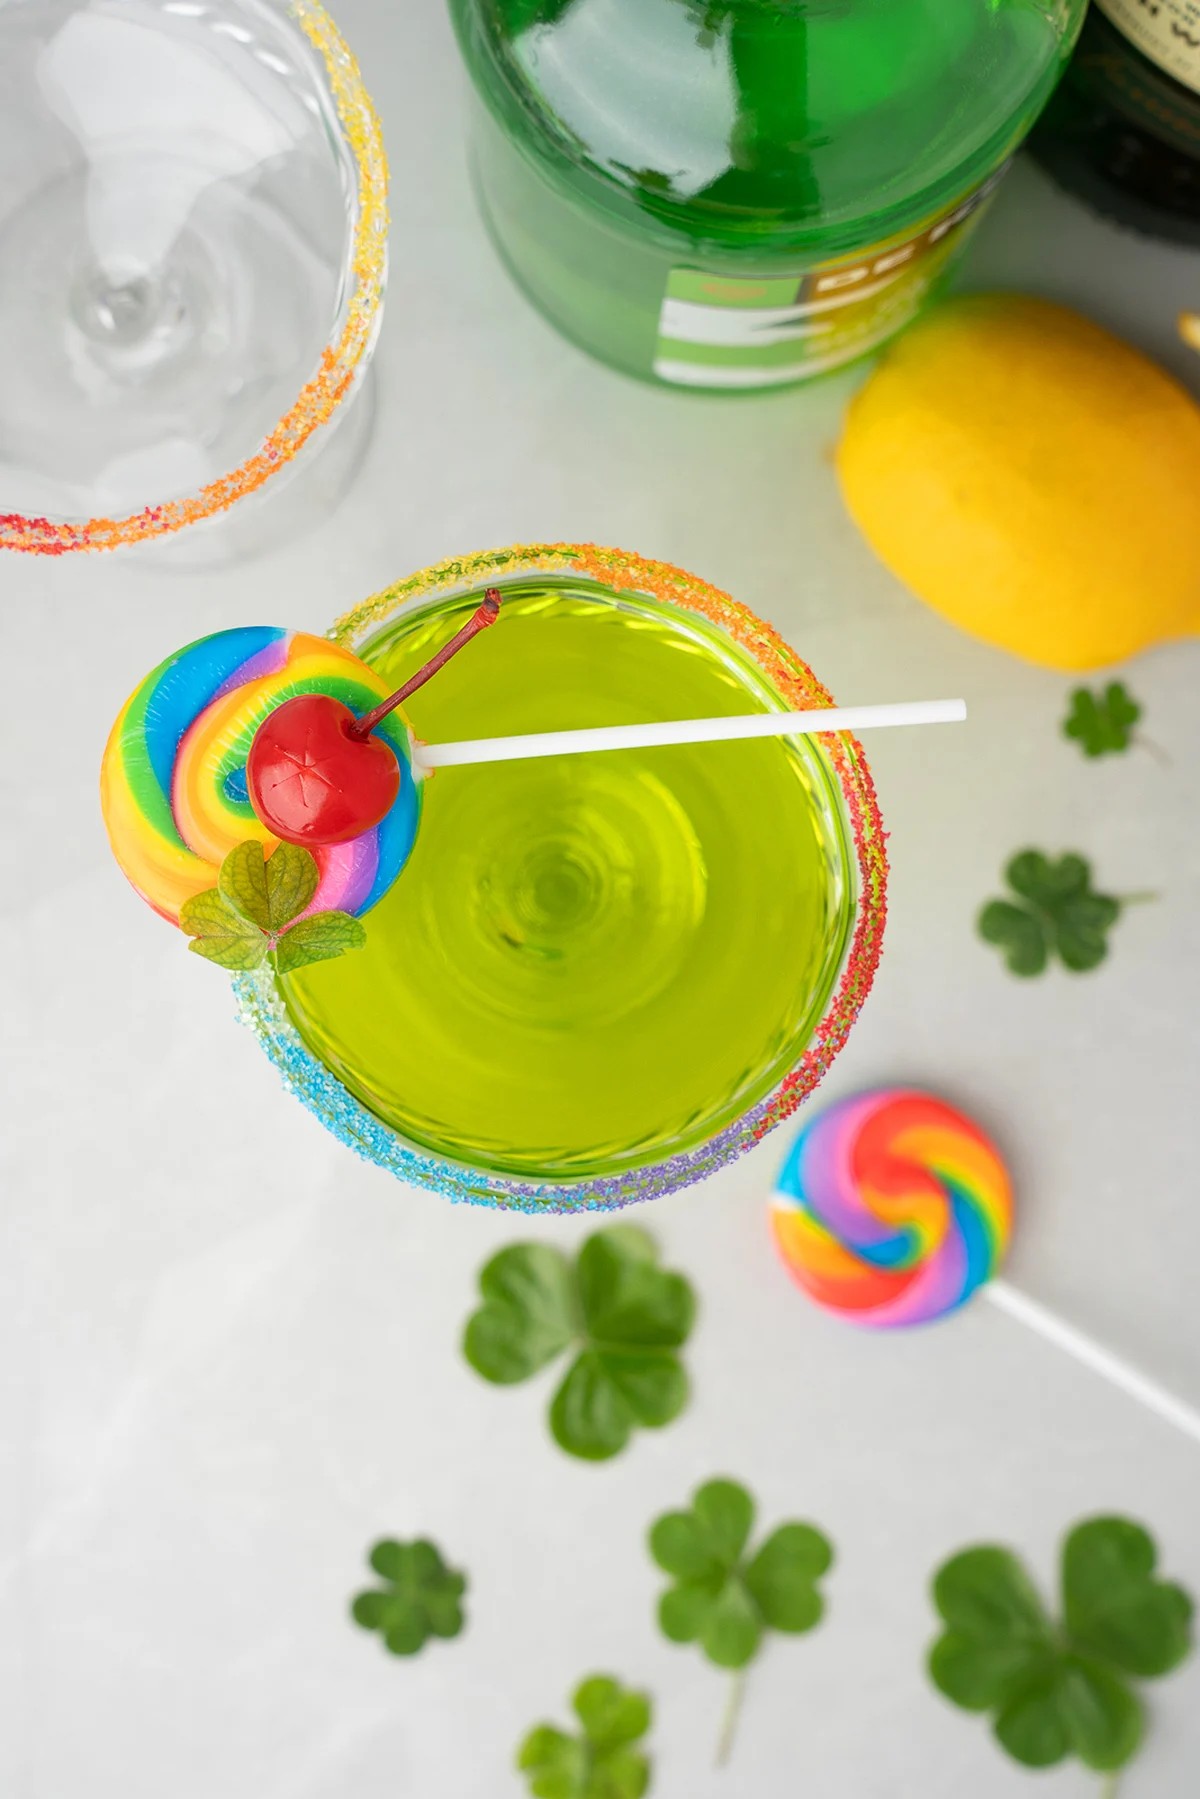 How to Make This Irish Whiskey Rainbow Cocktail